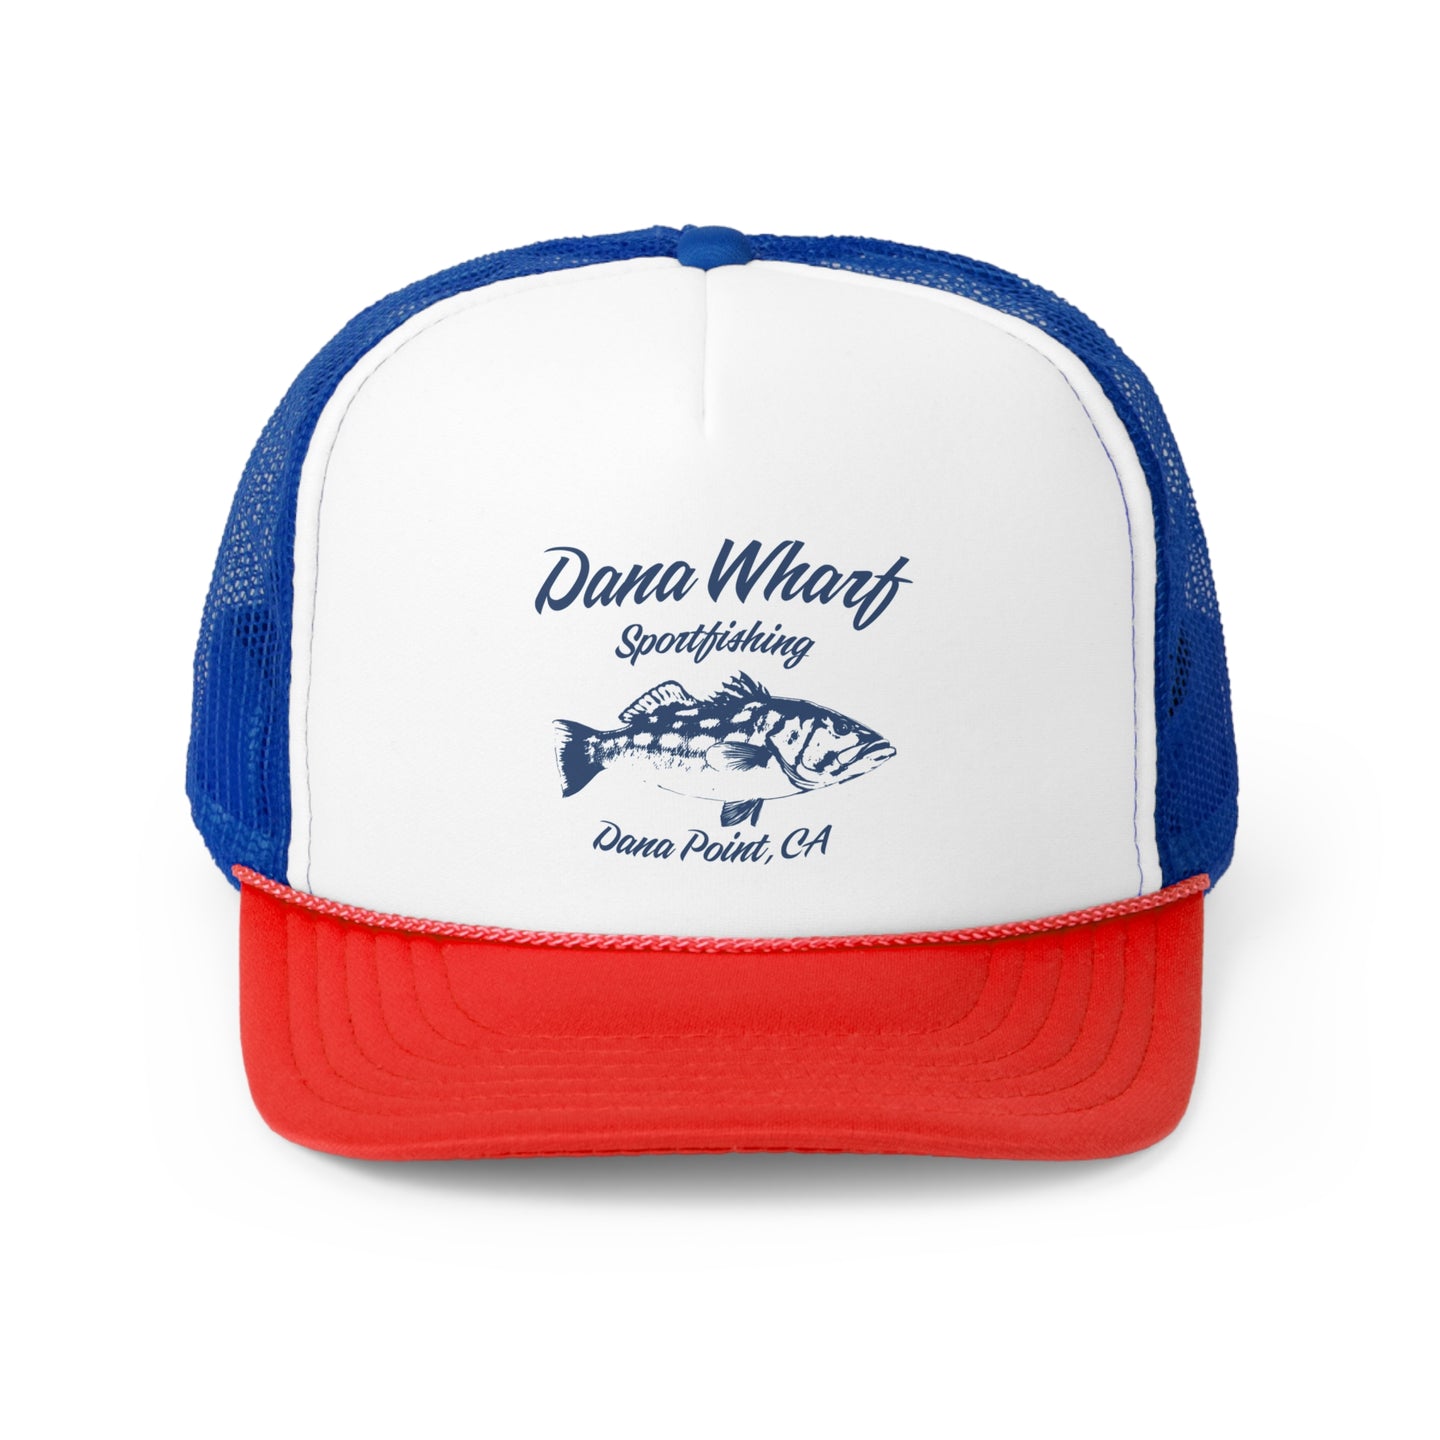 Dana Wharf Sportfishing Trucker Caps